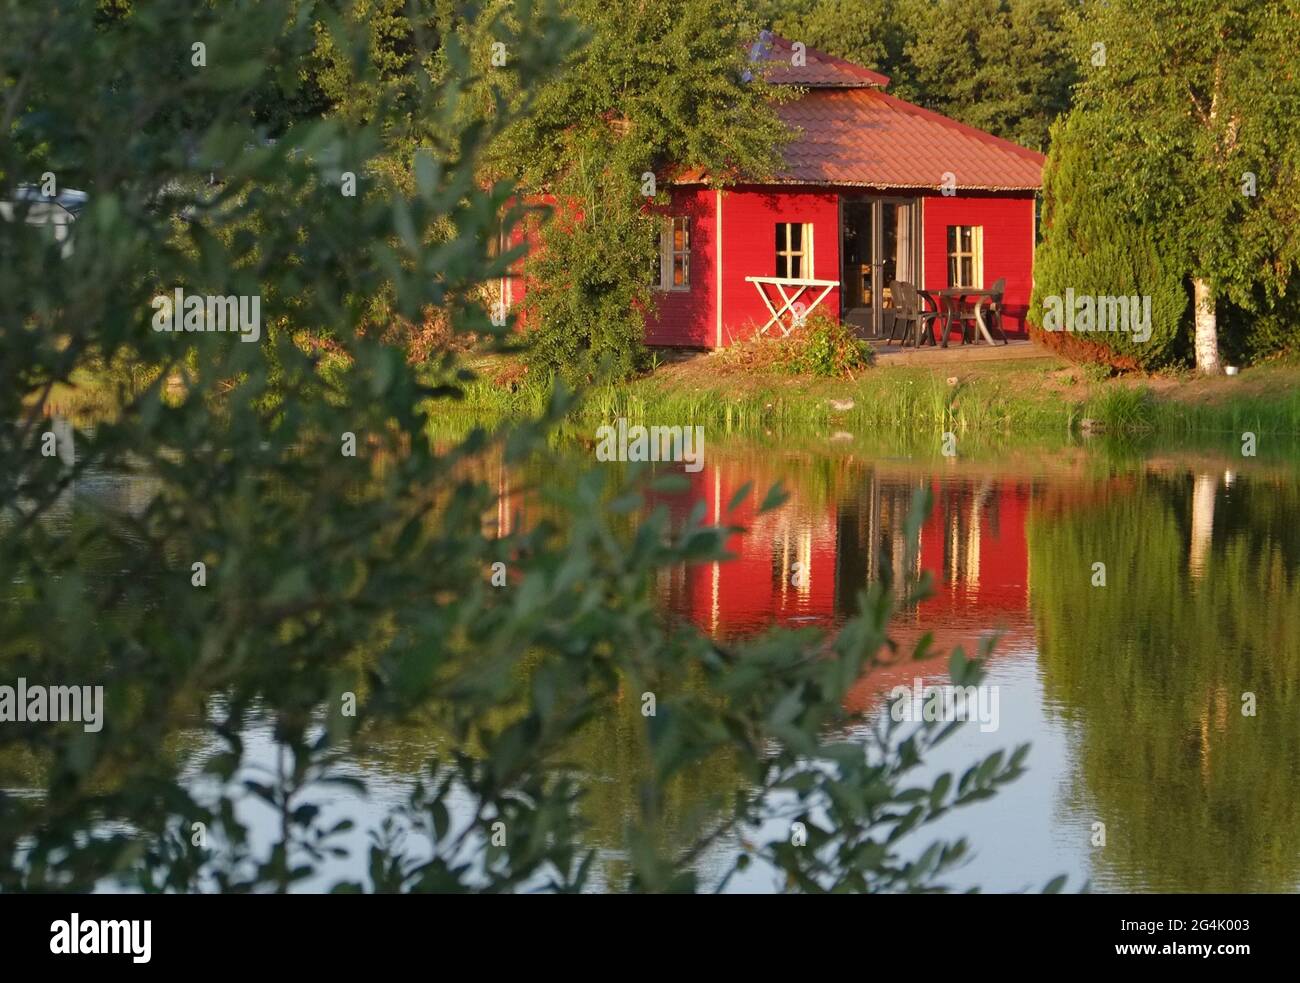 Joli petit chalet de vacances rouge sur le lac en France Banque D'Images